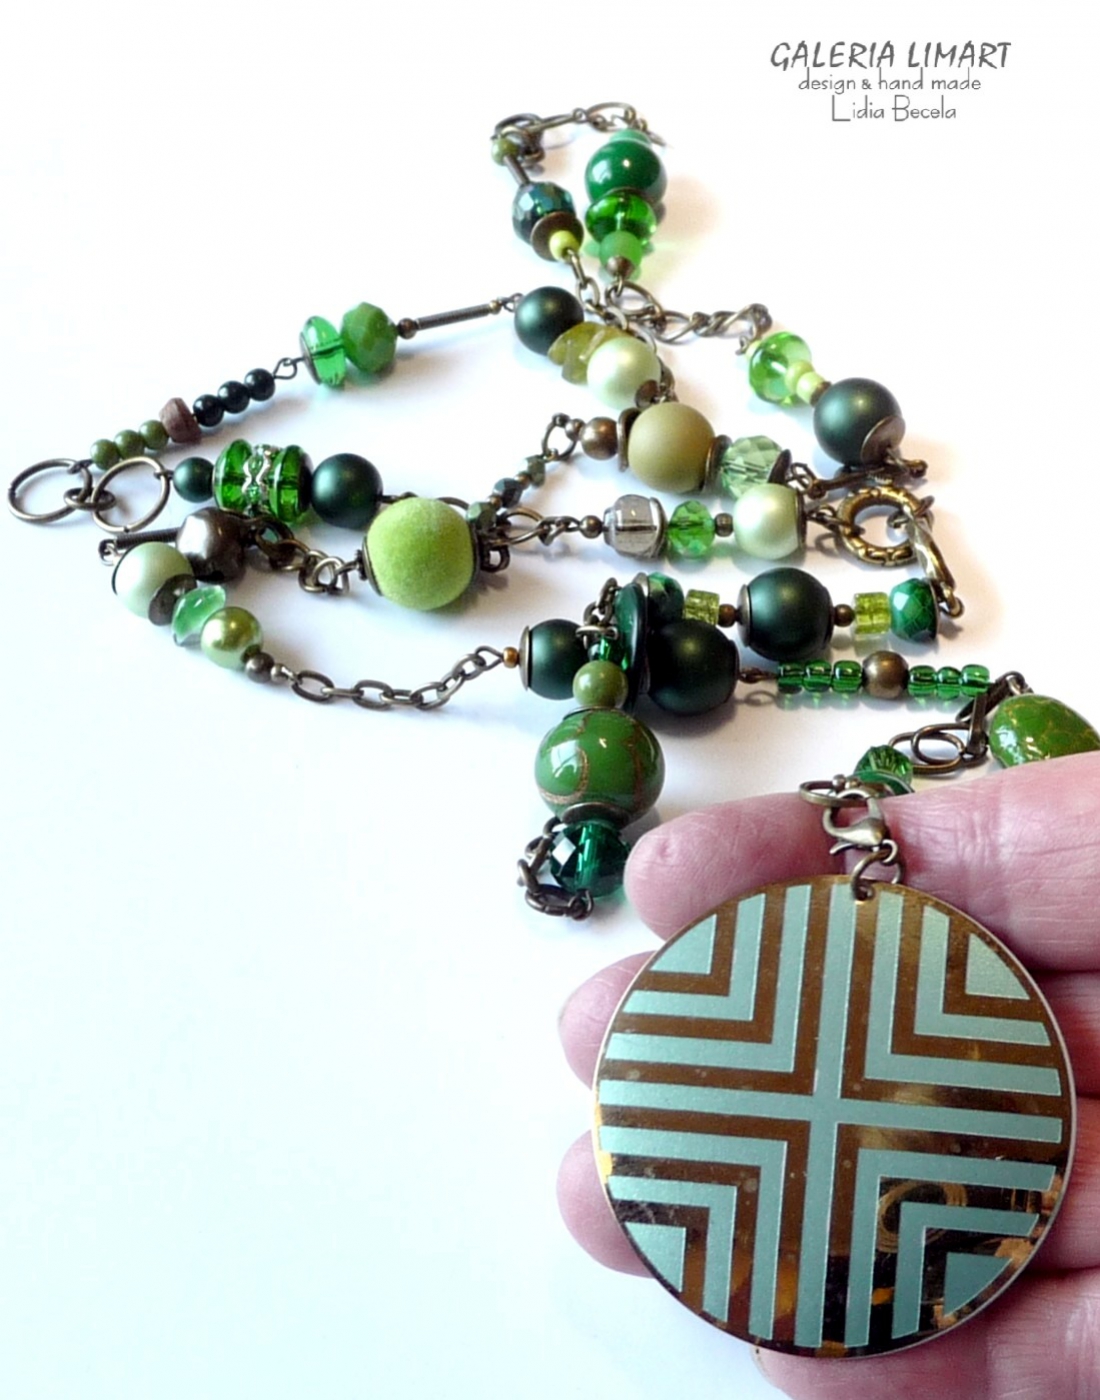 Szkło weneckie, ceramika, perły, kokos, szkło, akryl, minerały, kryształ, bali i mnóstwa mosiężnych elementów ozdobnych w okazałym pięknym zielonym naszyjniku handmade